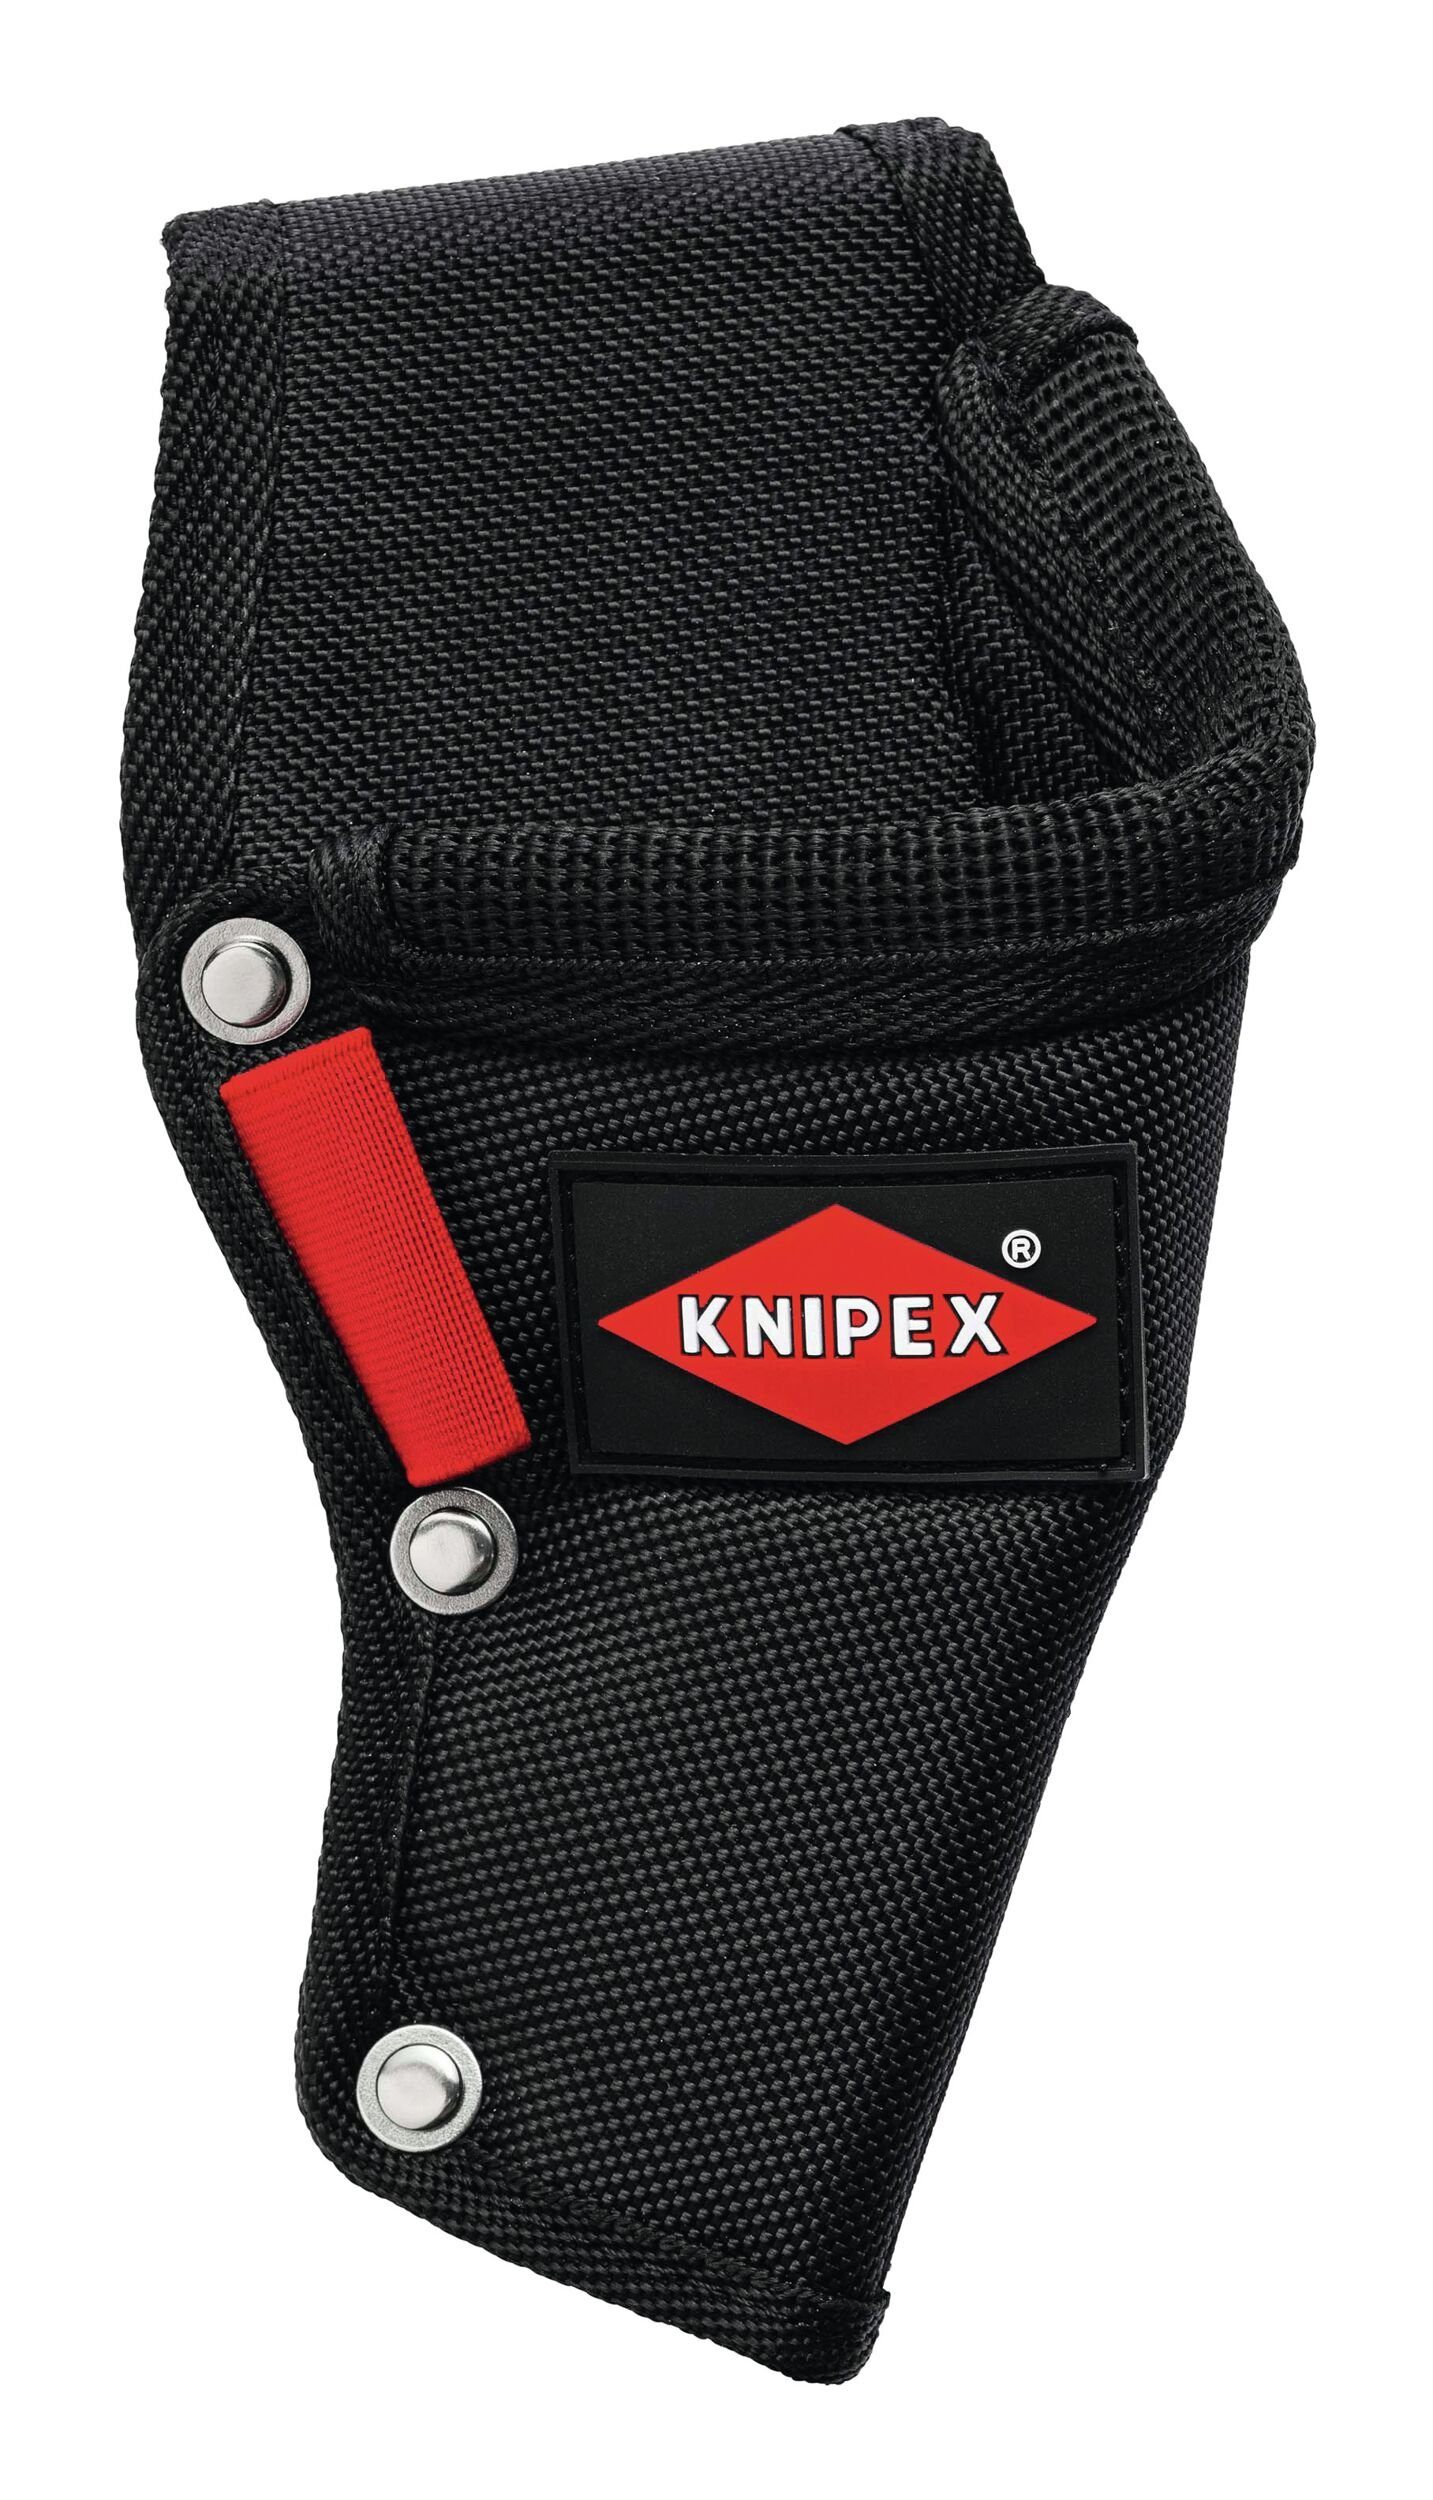 Knipex Elektrikerschere, Mehrzweck-Gürteltasche passend für SB 95 05 Elektr-Schere 20